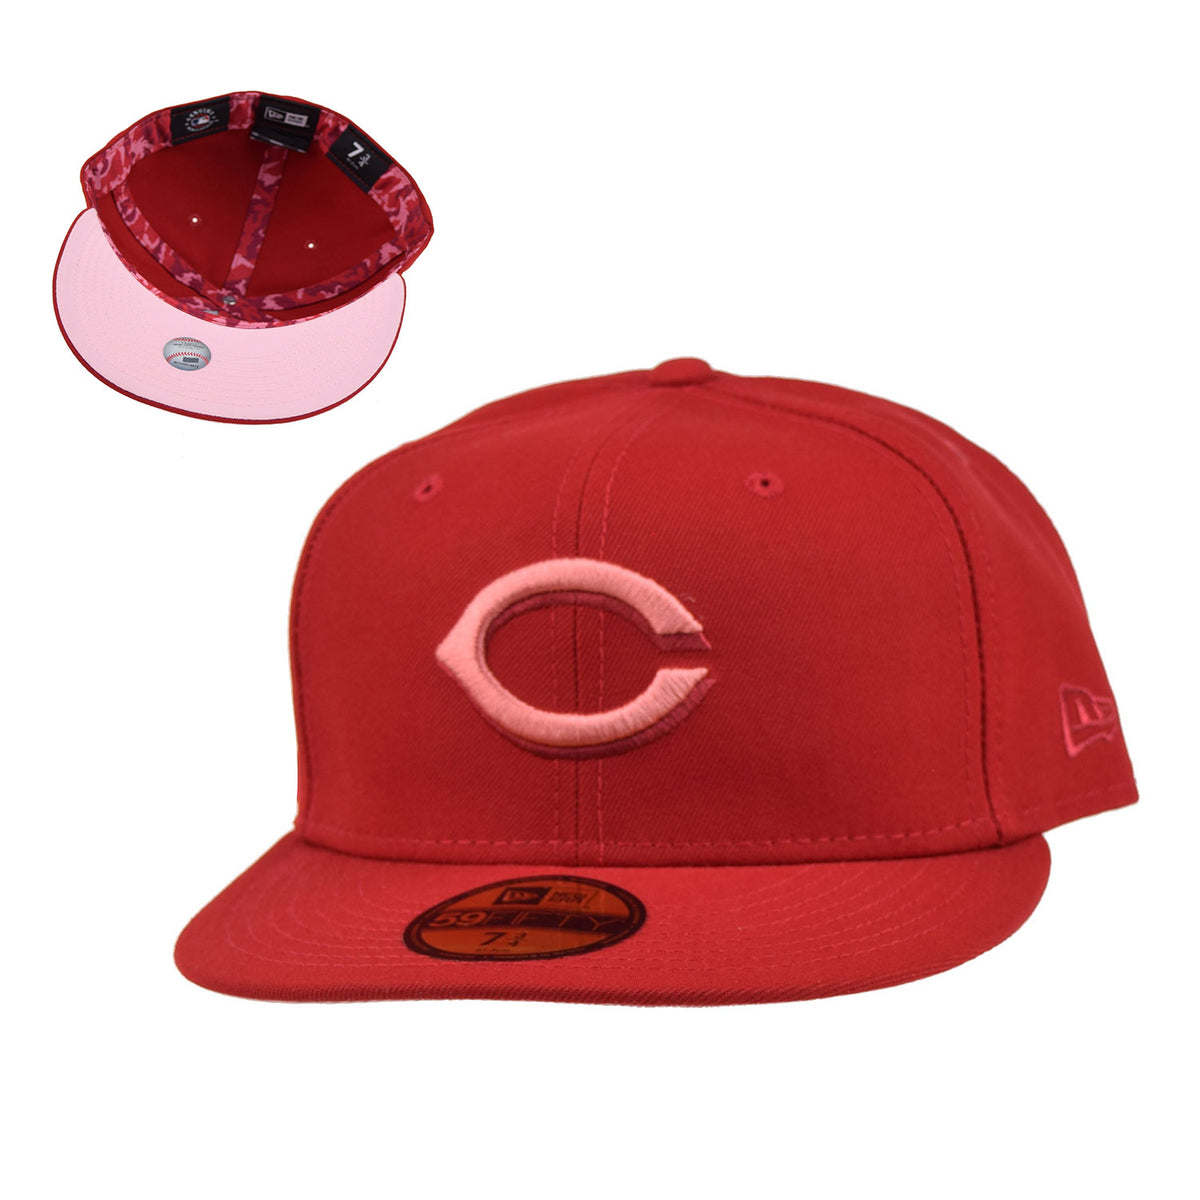 Cincinnati Reds New Era Dark 59FIFTY Fitted Hat - Camo